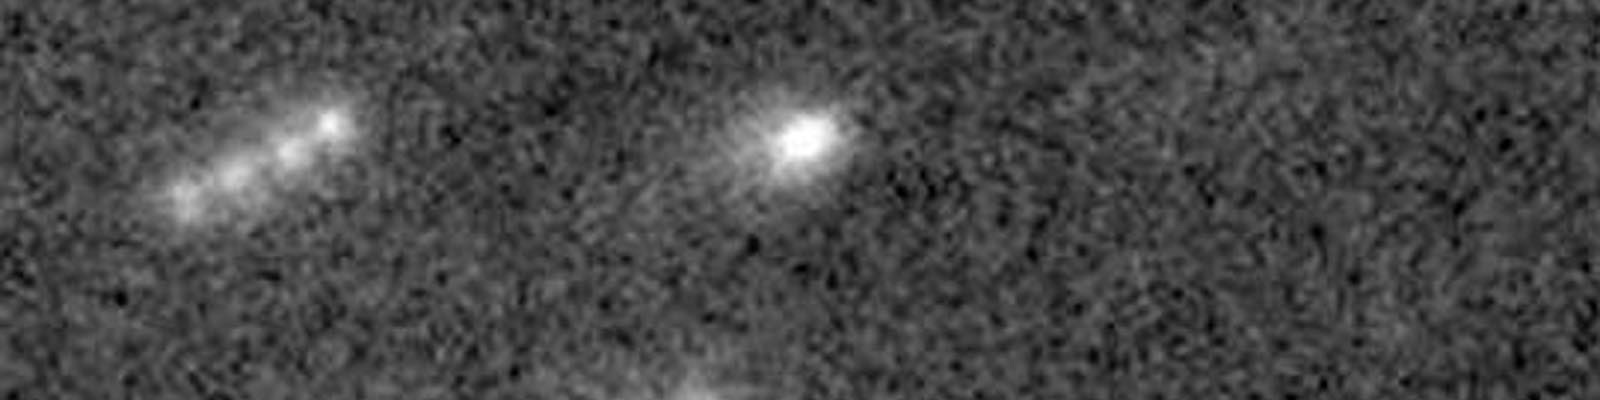 Comète Elenin au radiotélescope